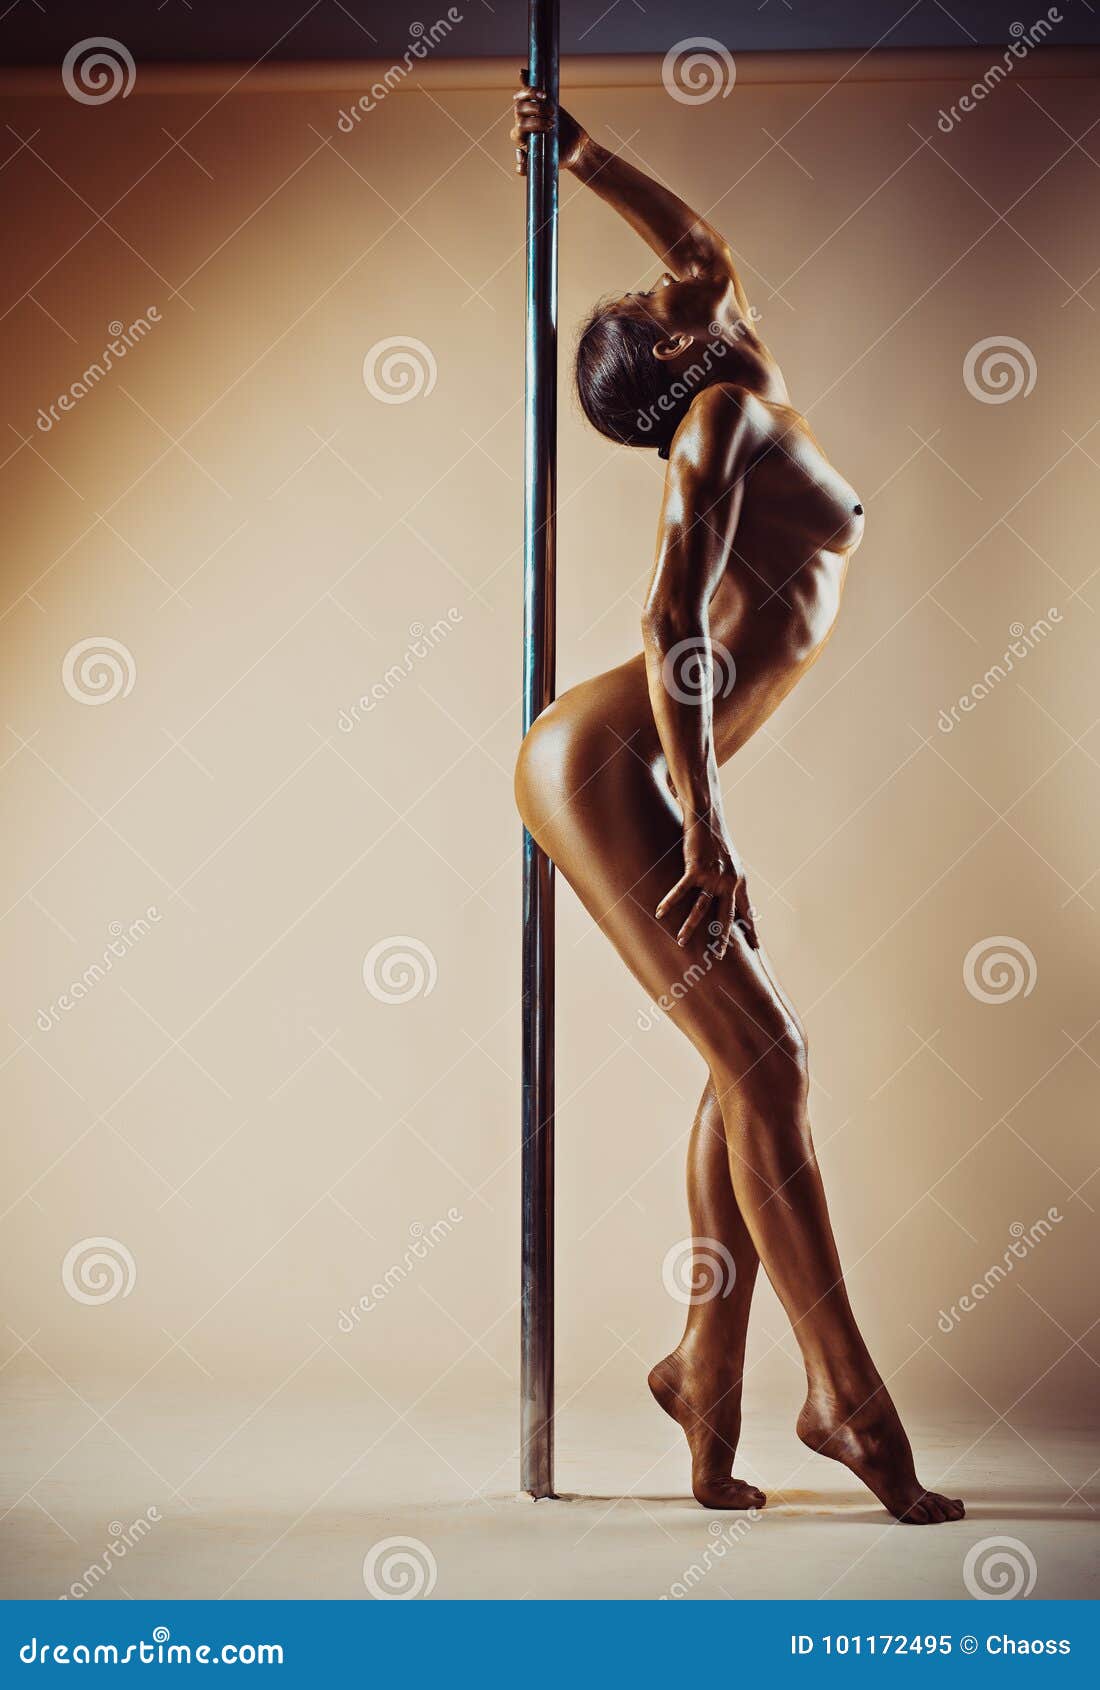 danny kearley add nude women pole dancing photo